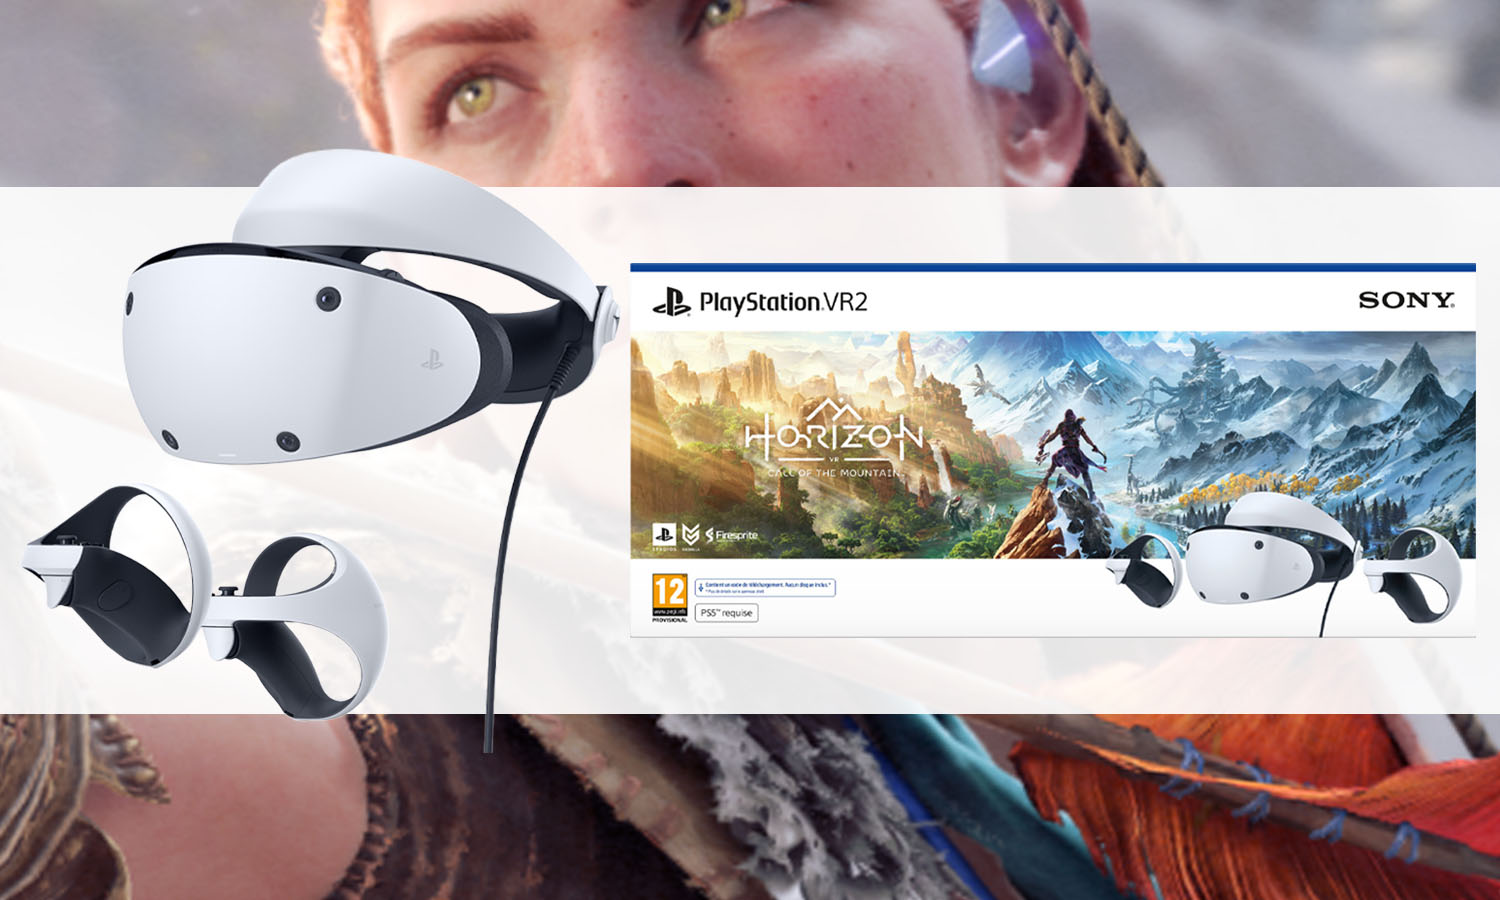 PS5 PlayStation VR 2 : Que savons nous du prochain PSVR2 de Sony ?